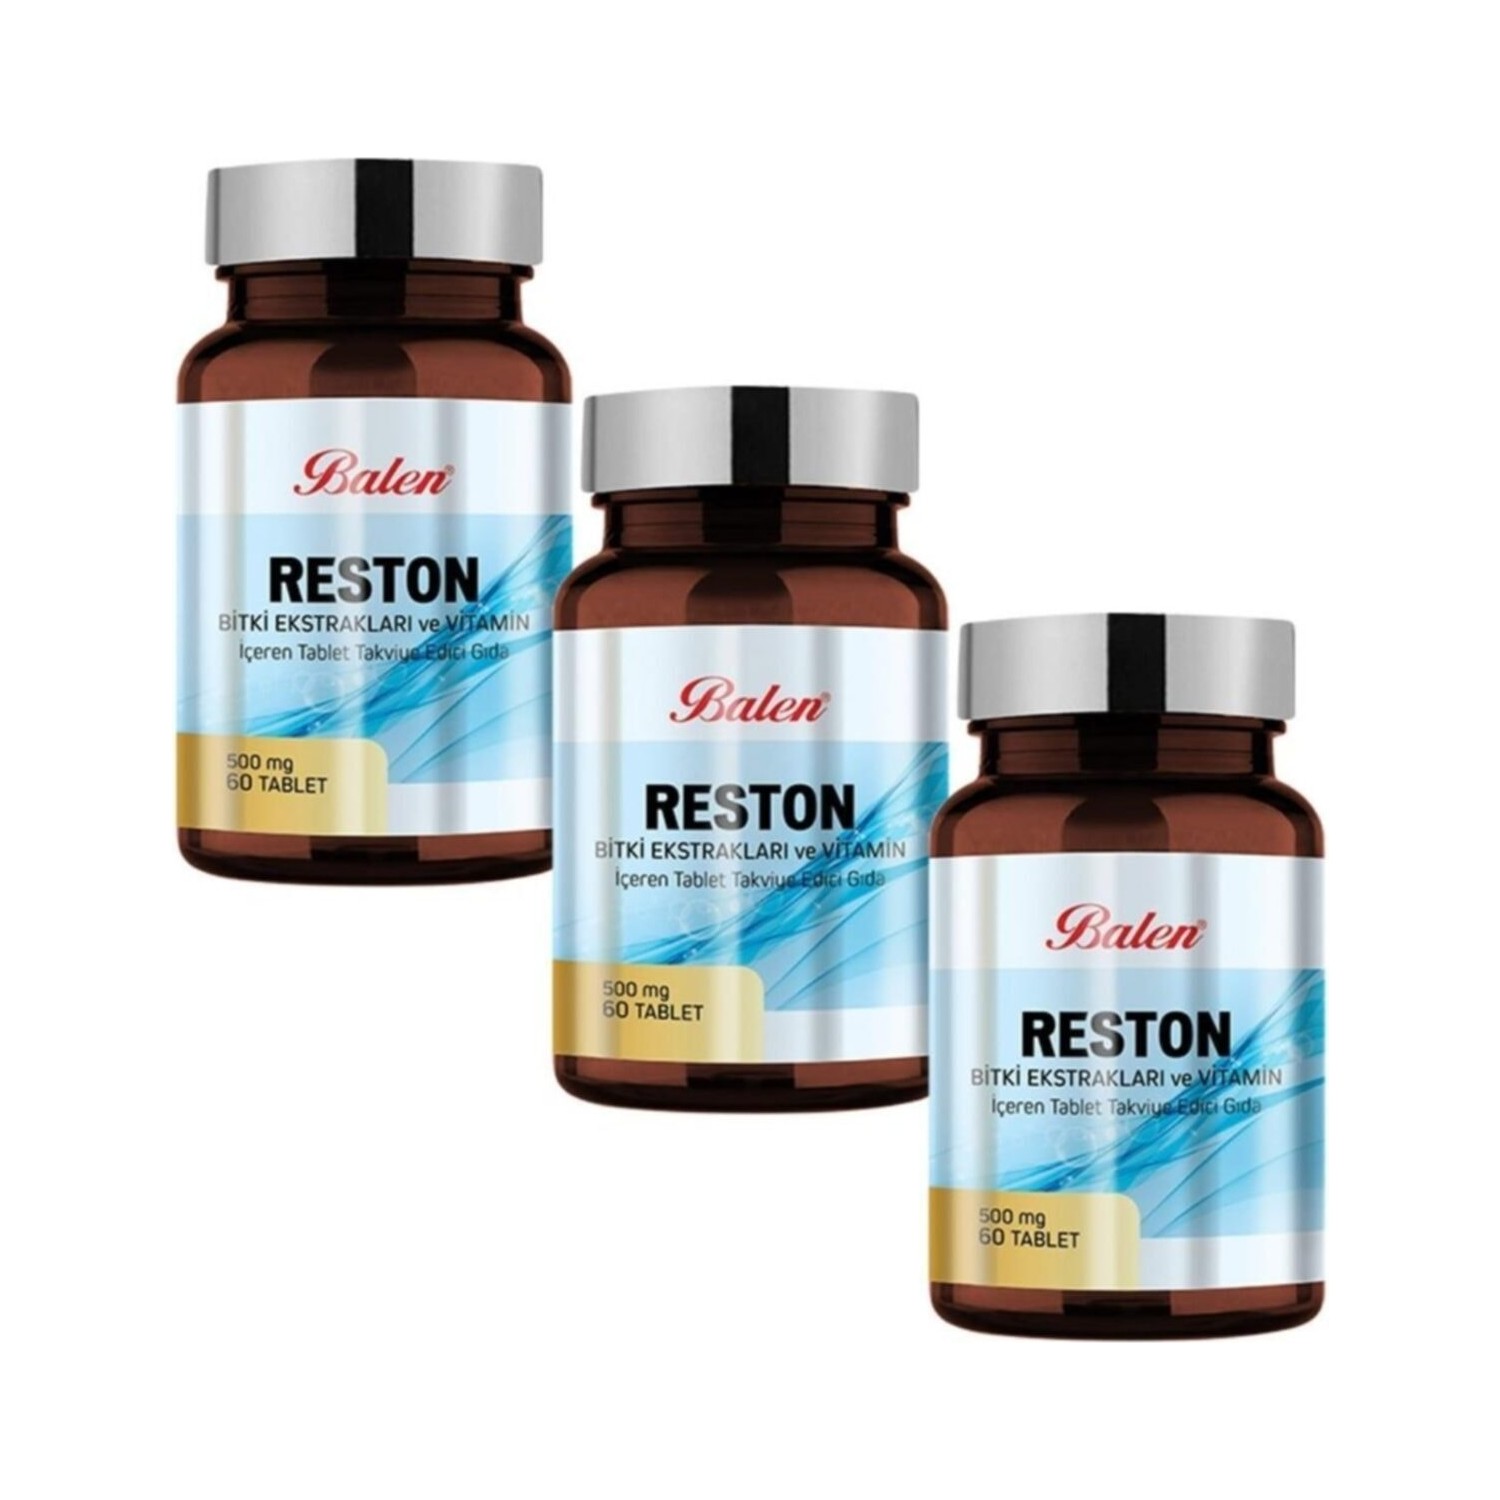 Пищевая добавка Balen Reston 500 мг, 3 упаковки по 60 капсул фромилид уно таблетки 500 мг 5 шт